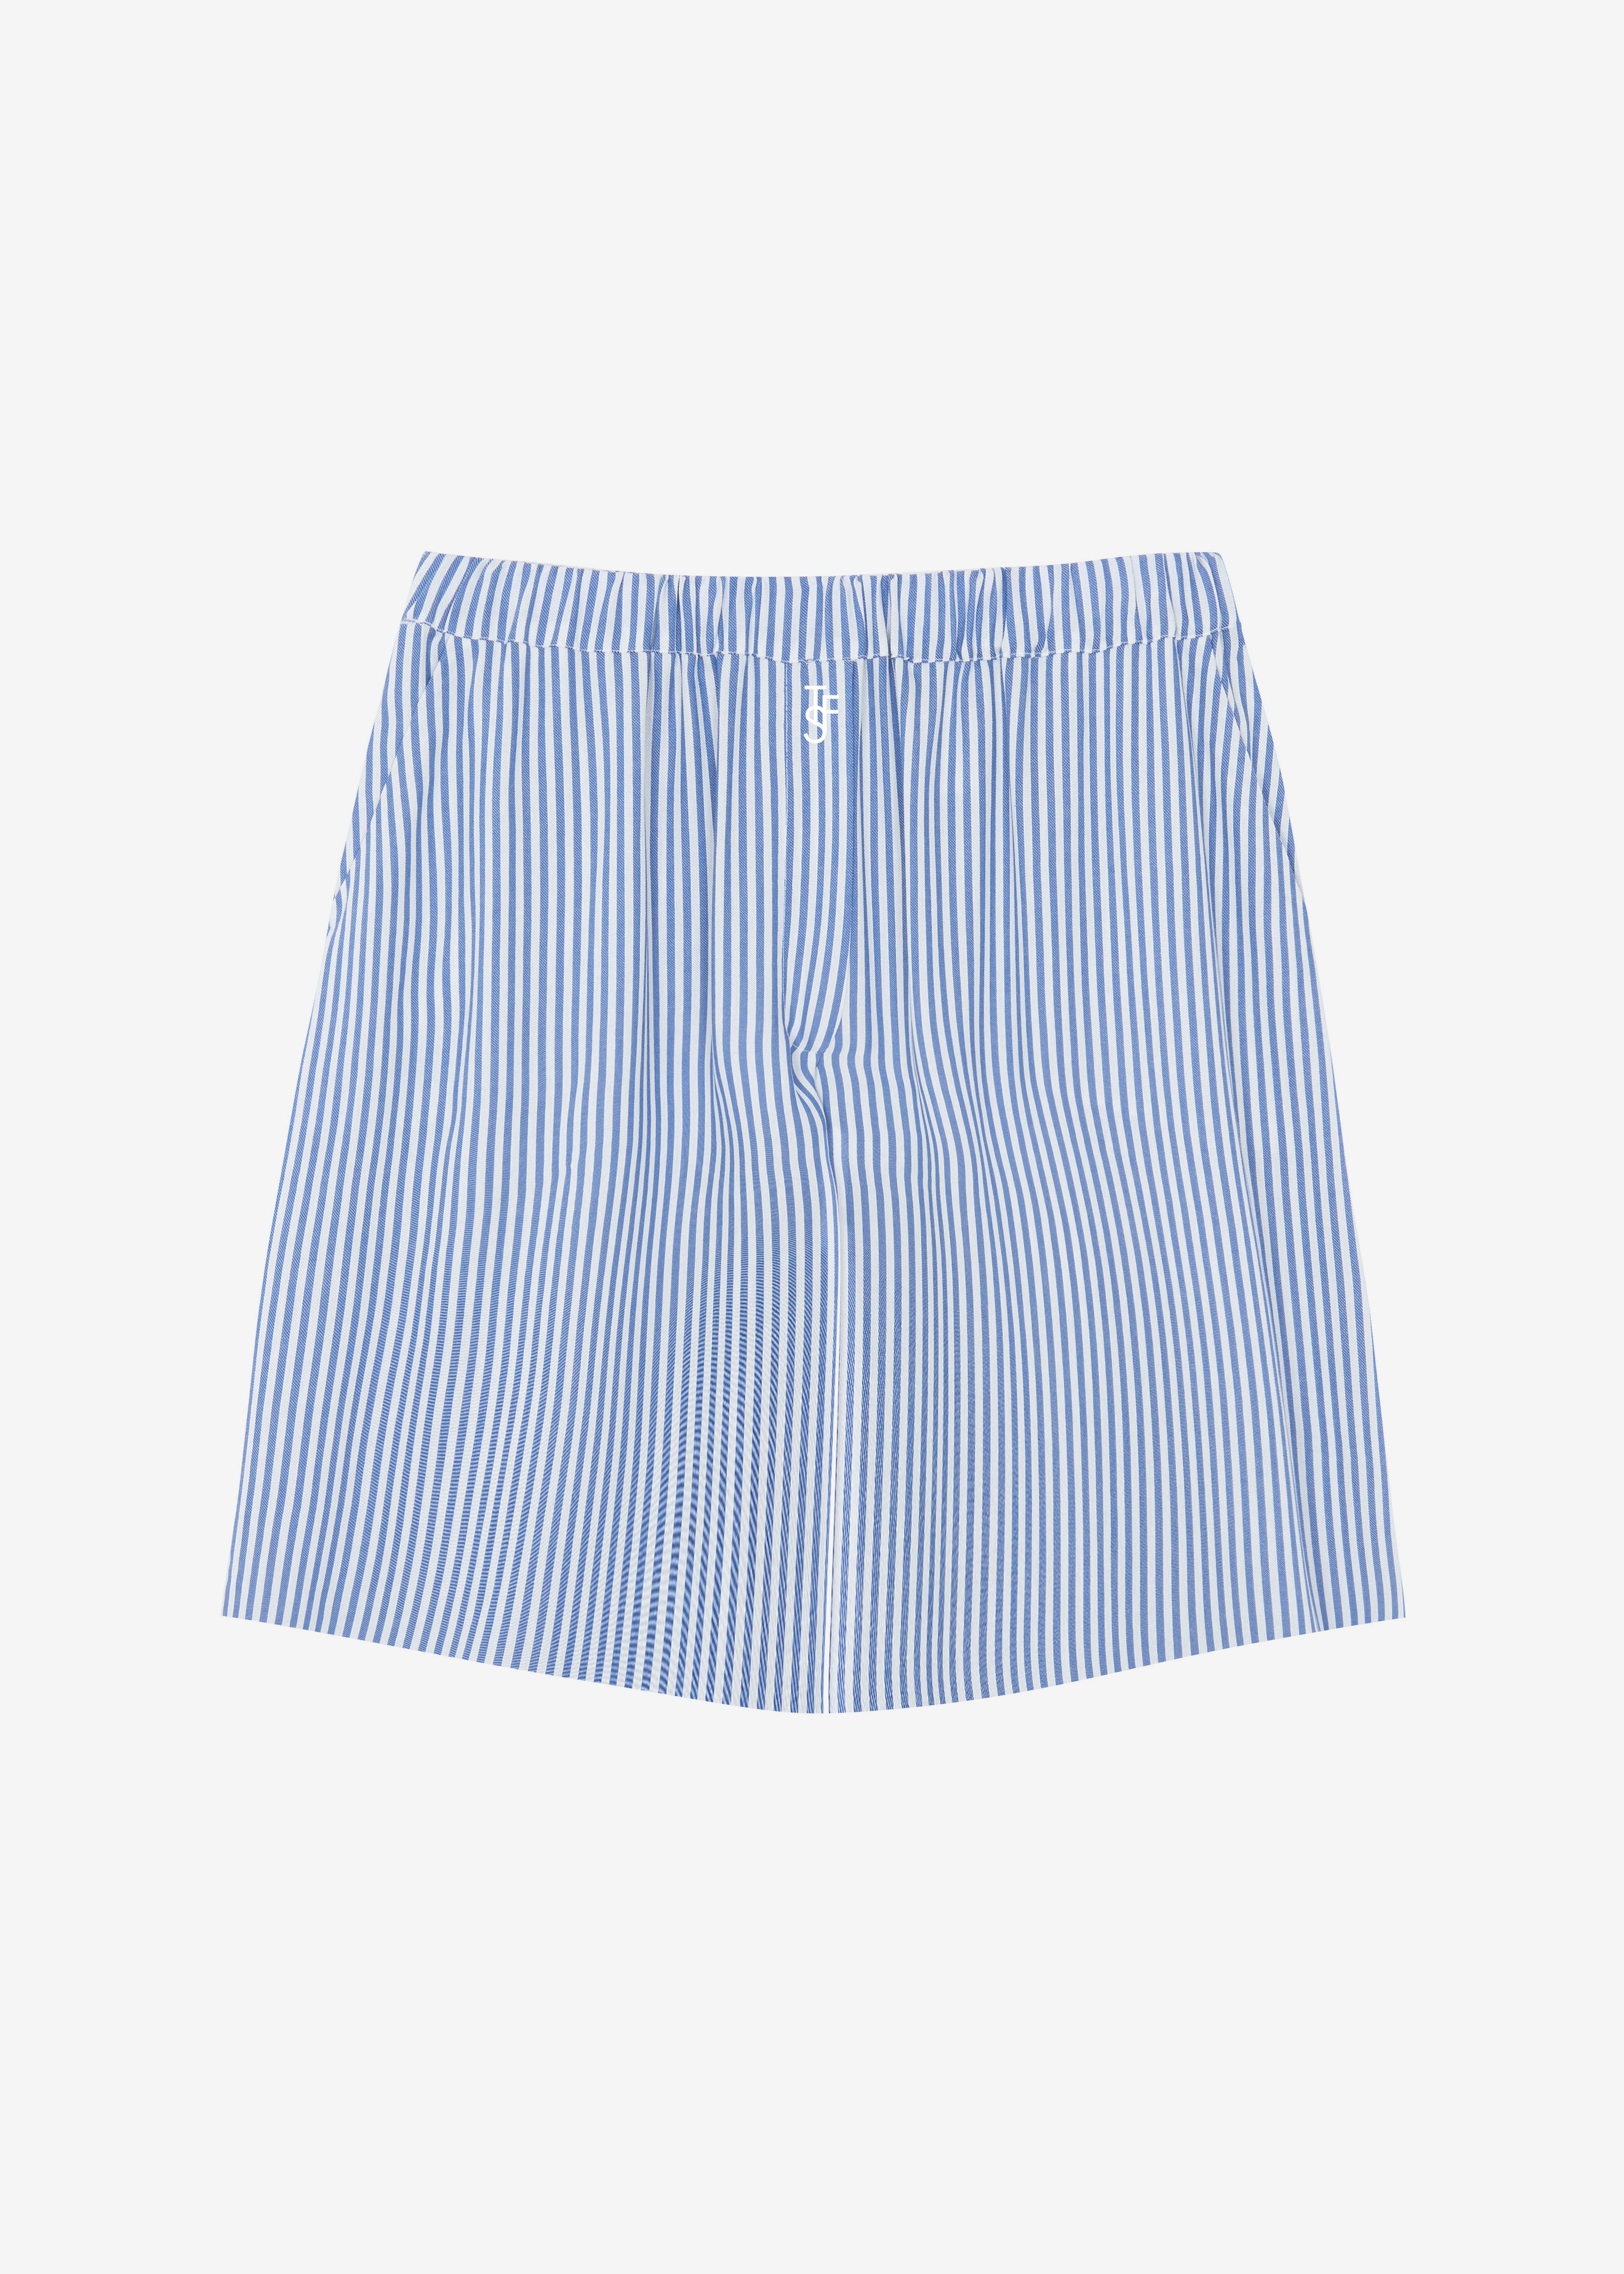 Lui Fluid Boxer Shorts - White/Blue Stripe - 12